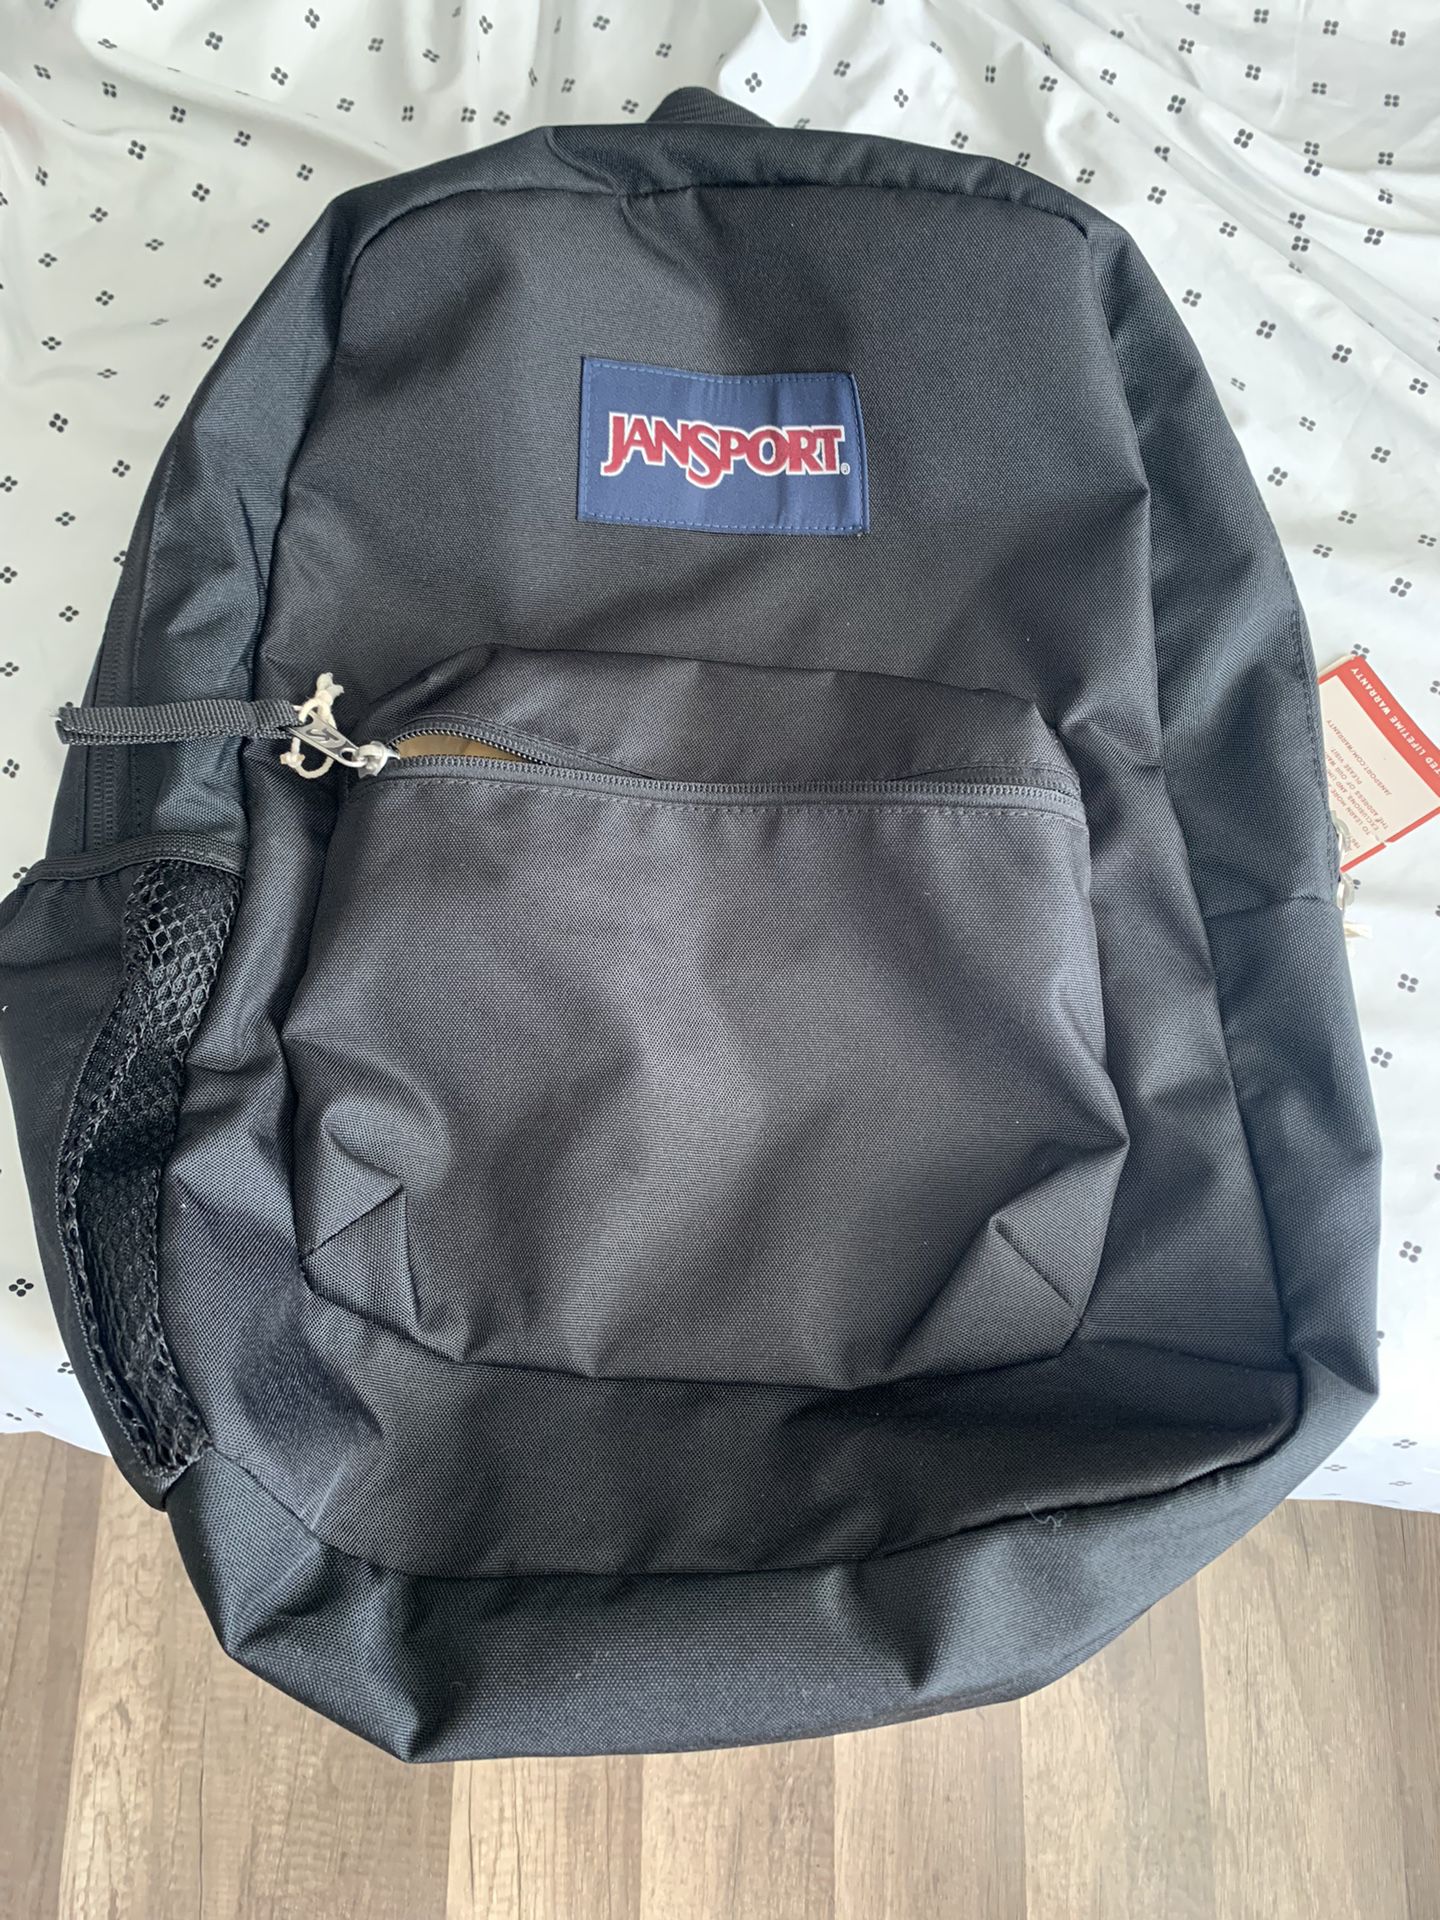 Jansport Backpack .